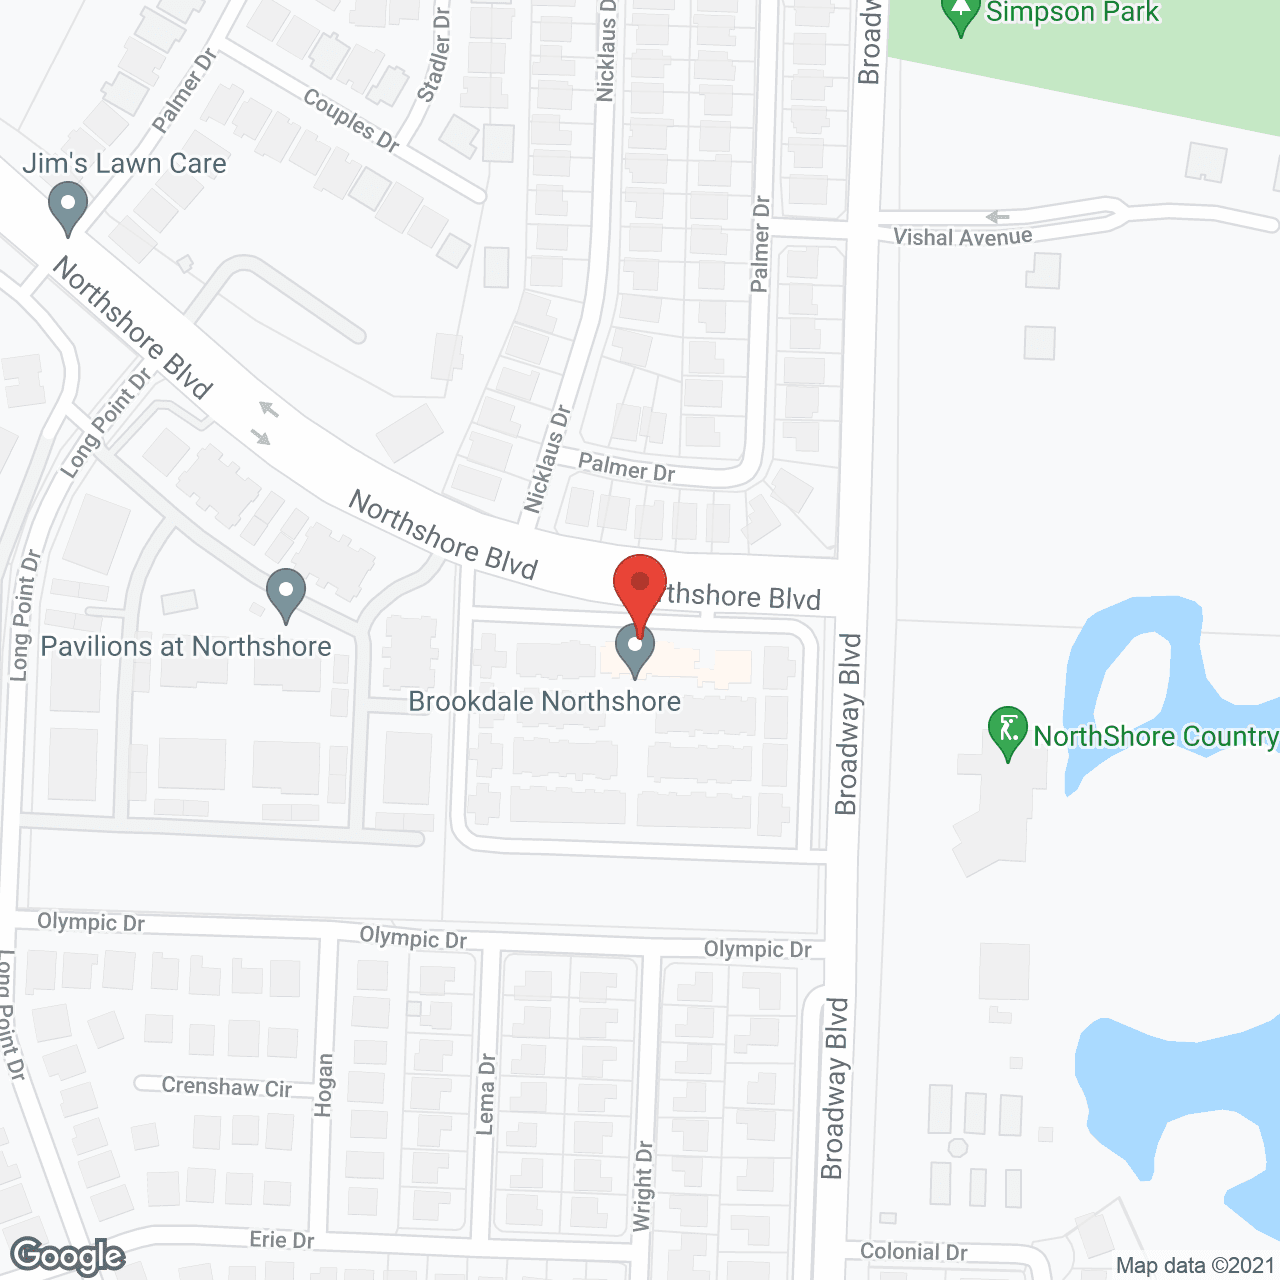 Brookdale Northshore in google map